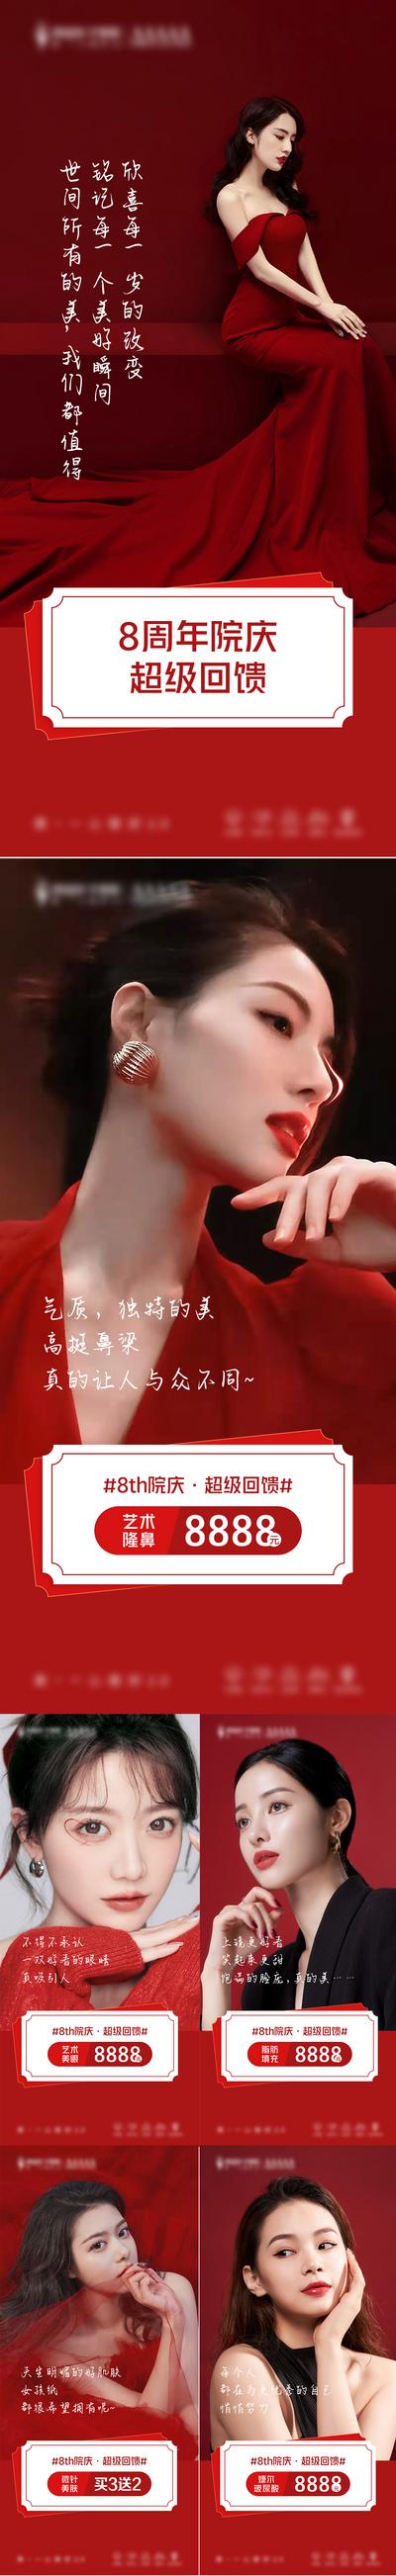 南门网 海报 医美 美容 周年庆 鼻子 眼睛 项目 模特 红色 高级 系列